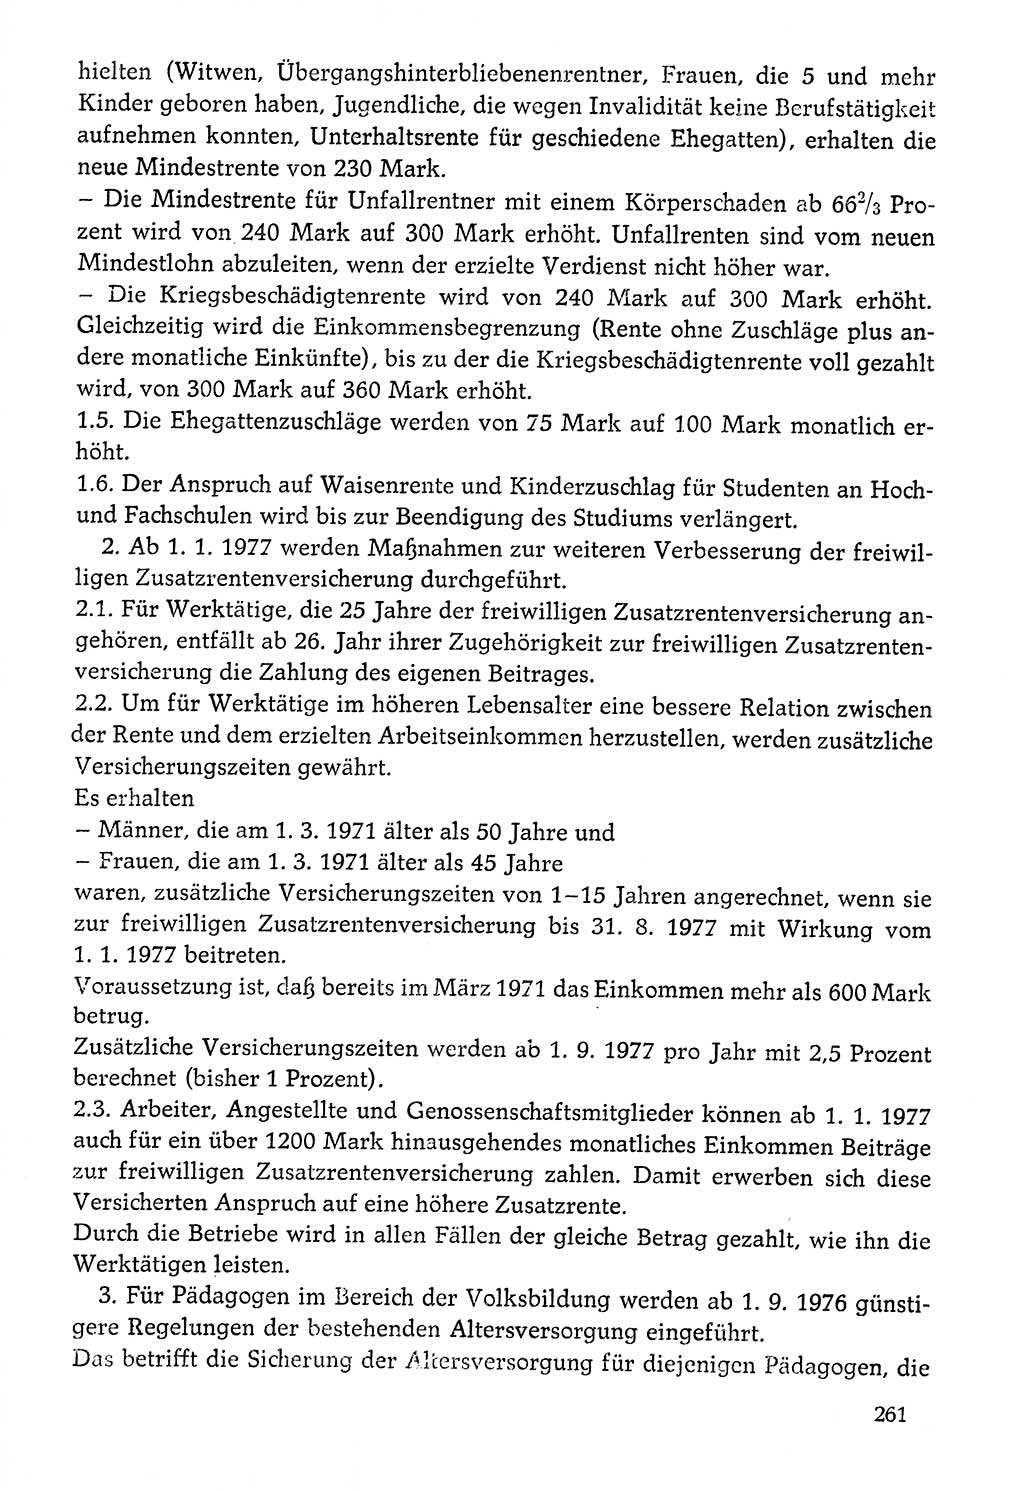 Dokumente der Sozialistischen Einheitspartei Deutschlands (SED) [Deutsche Demokratische Republik (DDR)] 1976-1977, Seite 261 (Dok. SED DDR 1976-1977, S. 261)